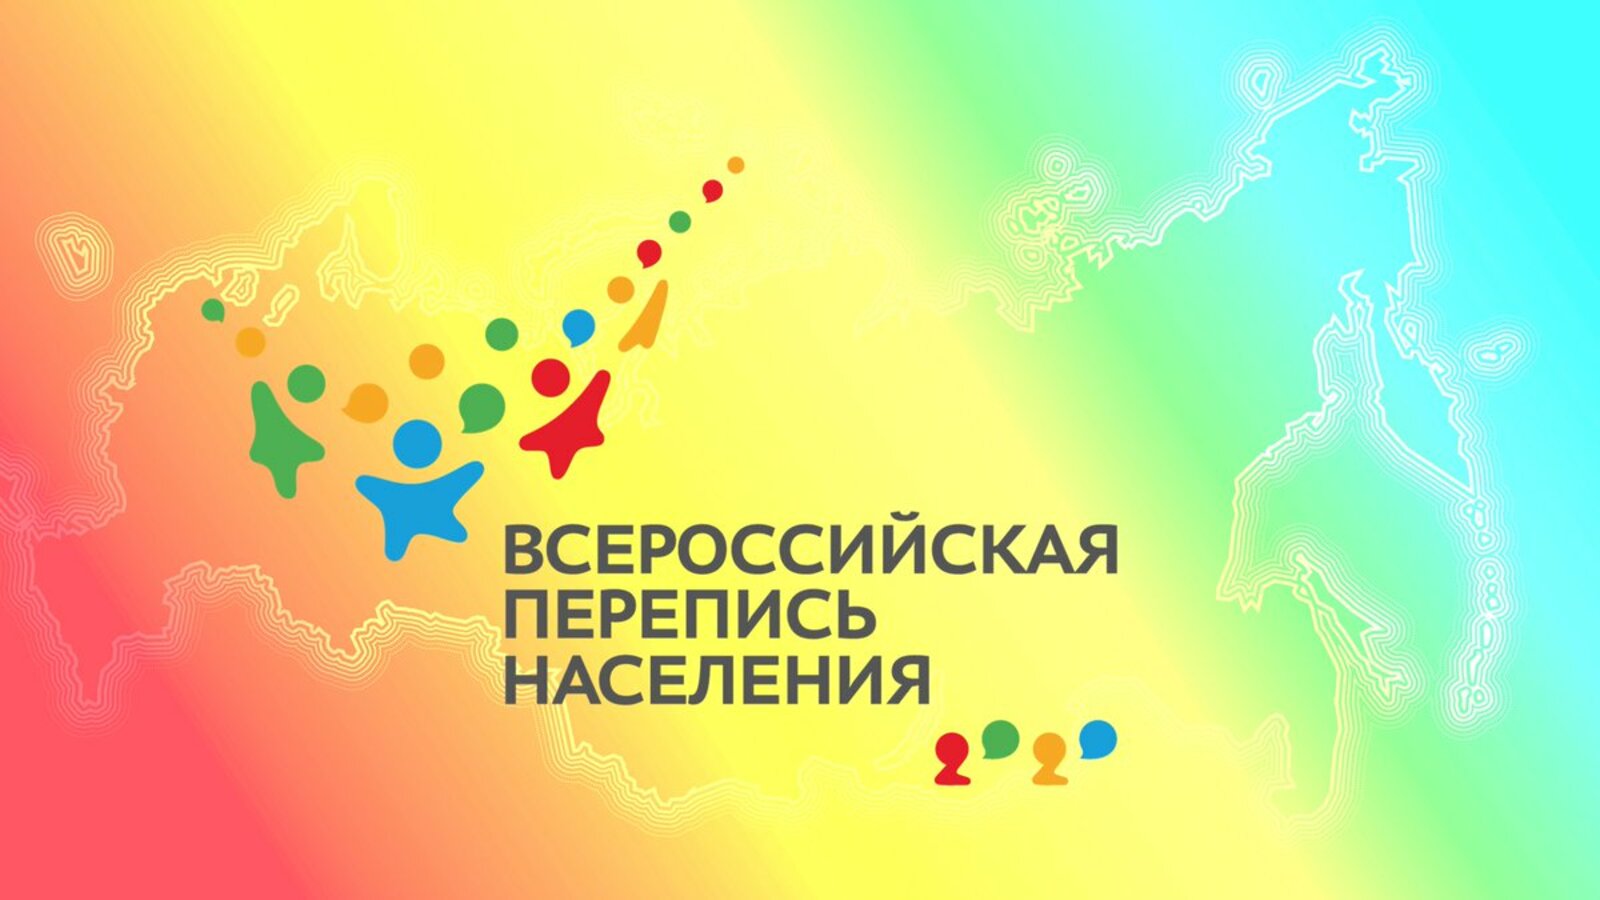 Новые решения для безопасной переписи в Башкортостане